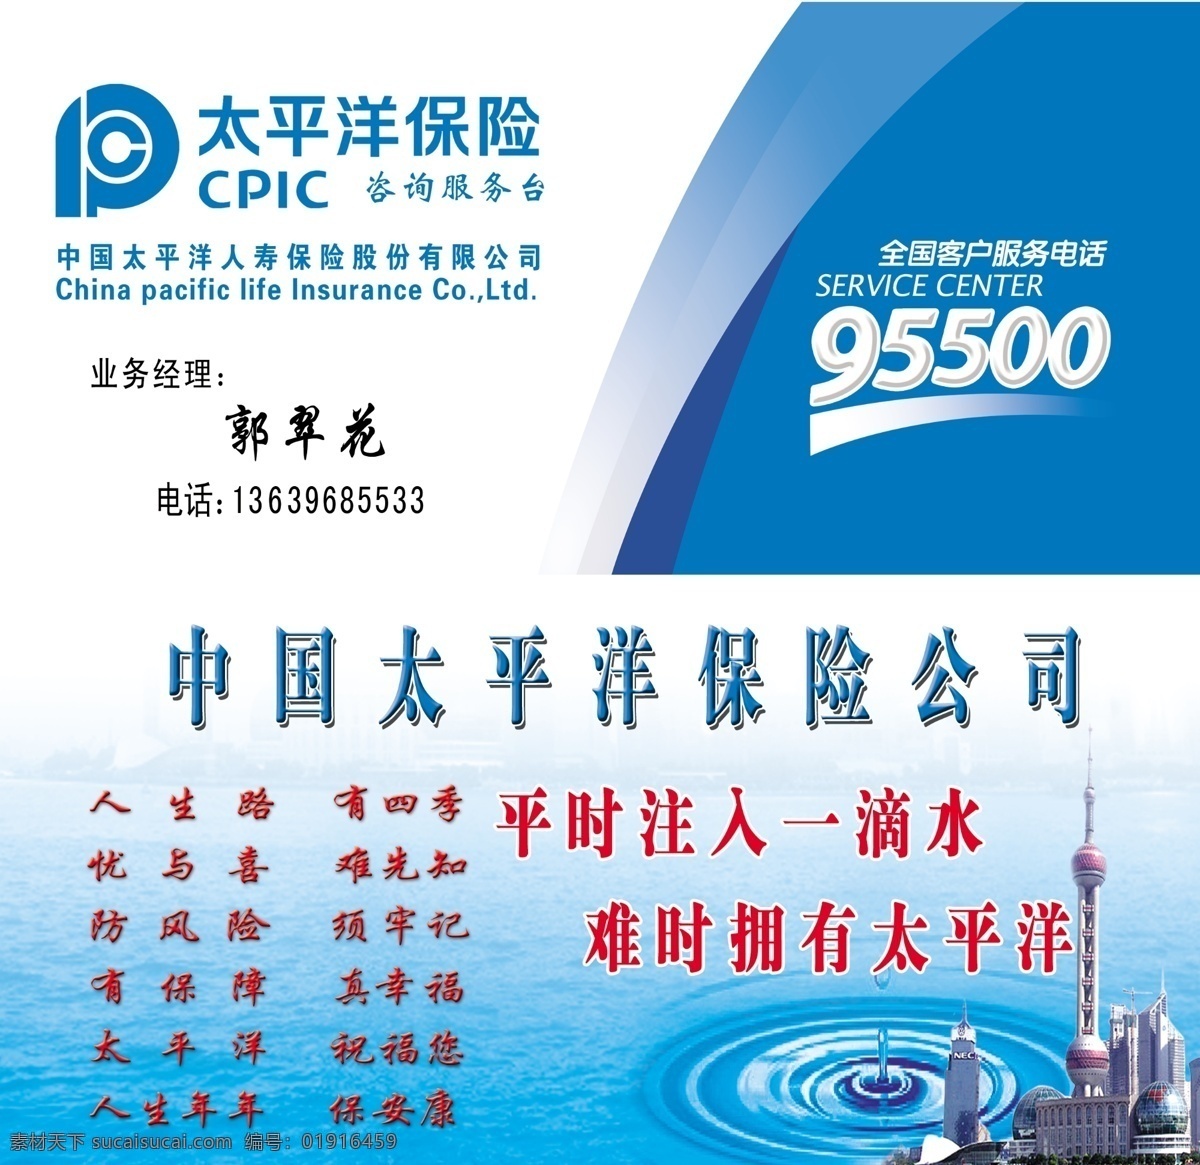 太平洋保险 中国太平洋 太平洋名片 太平洋版面 太平洋标志 cpic 数字 水滴 旋涡 大海 城市 名片设计 广告设计模板 源文件